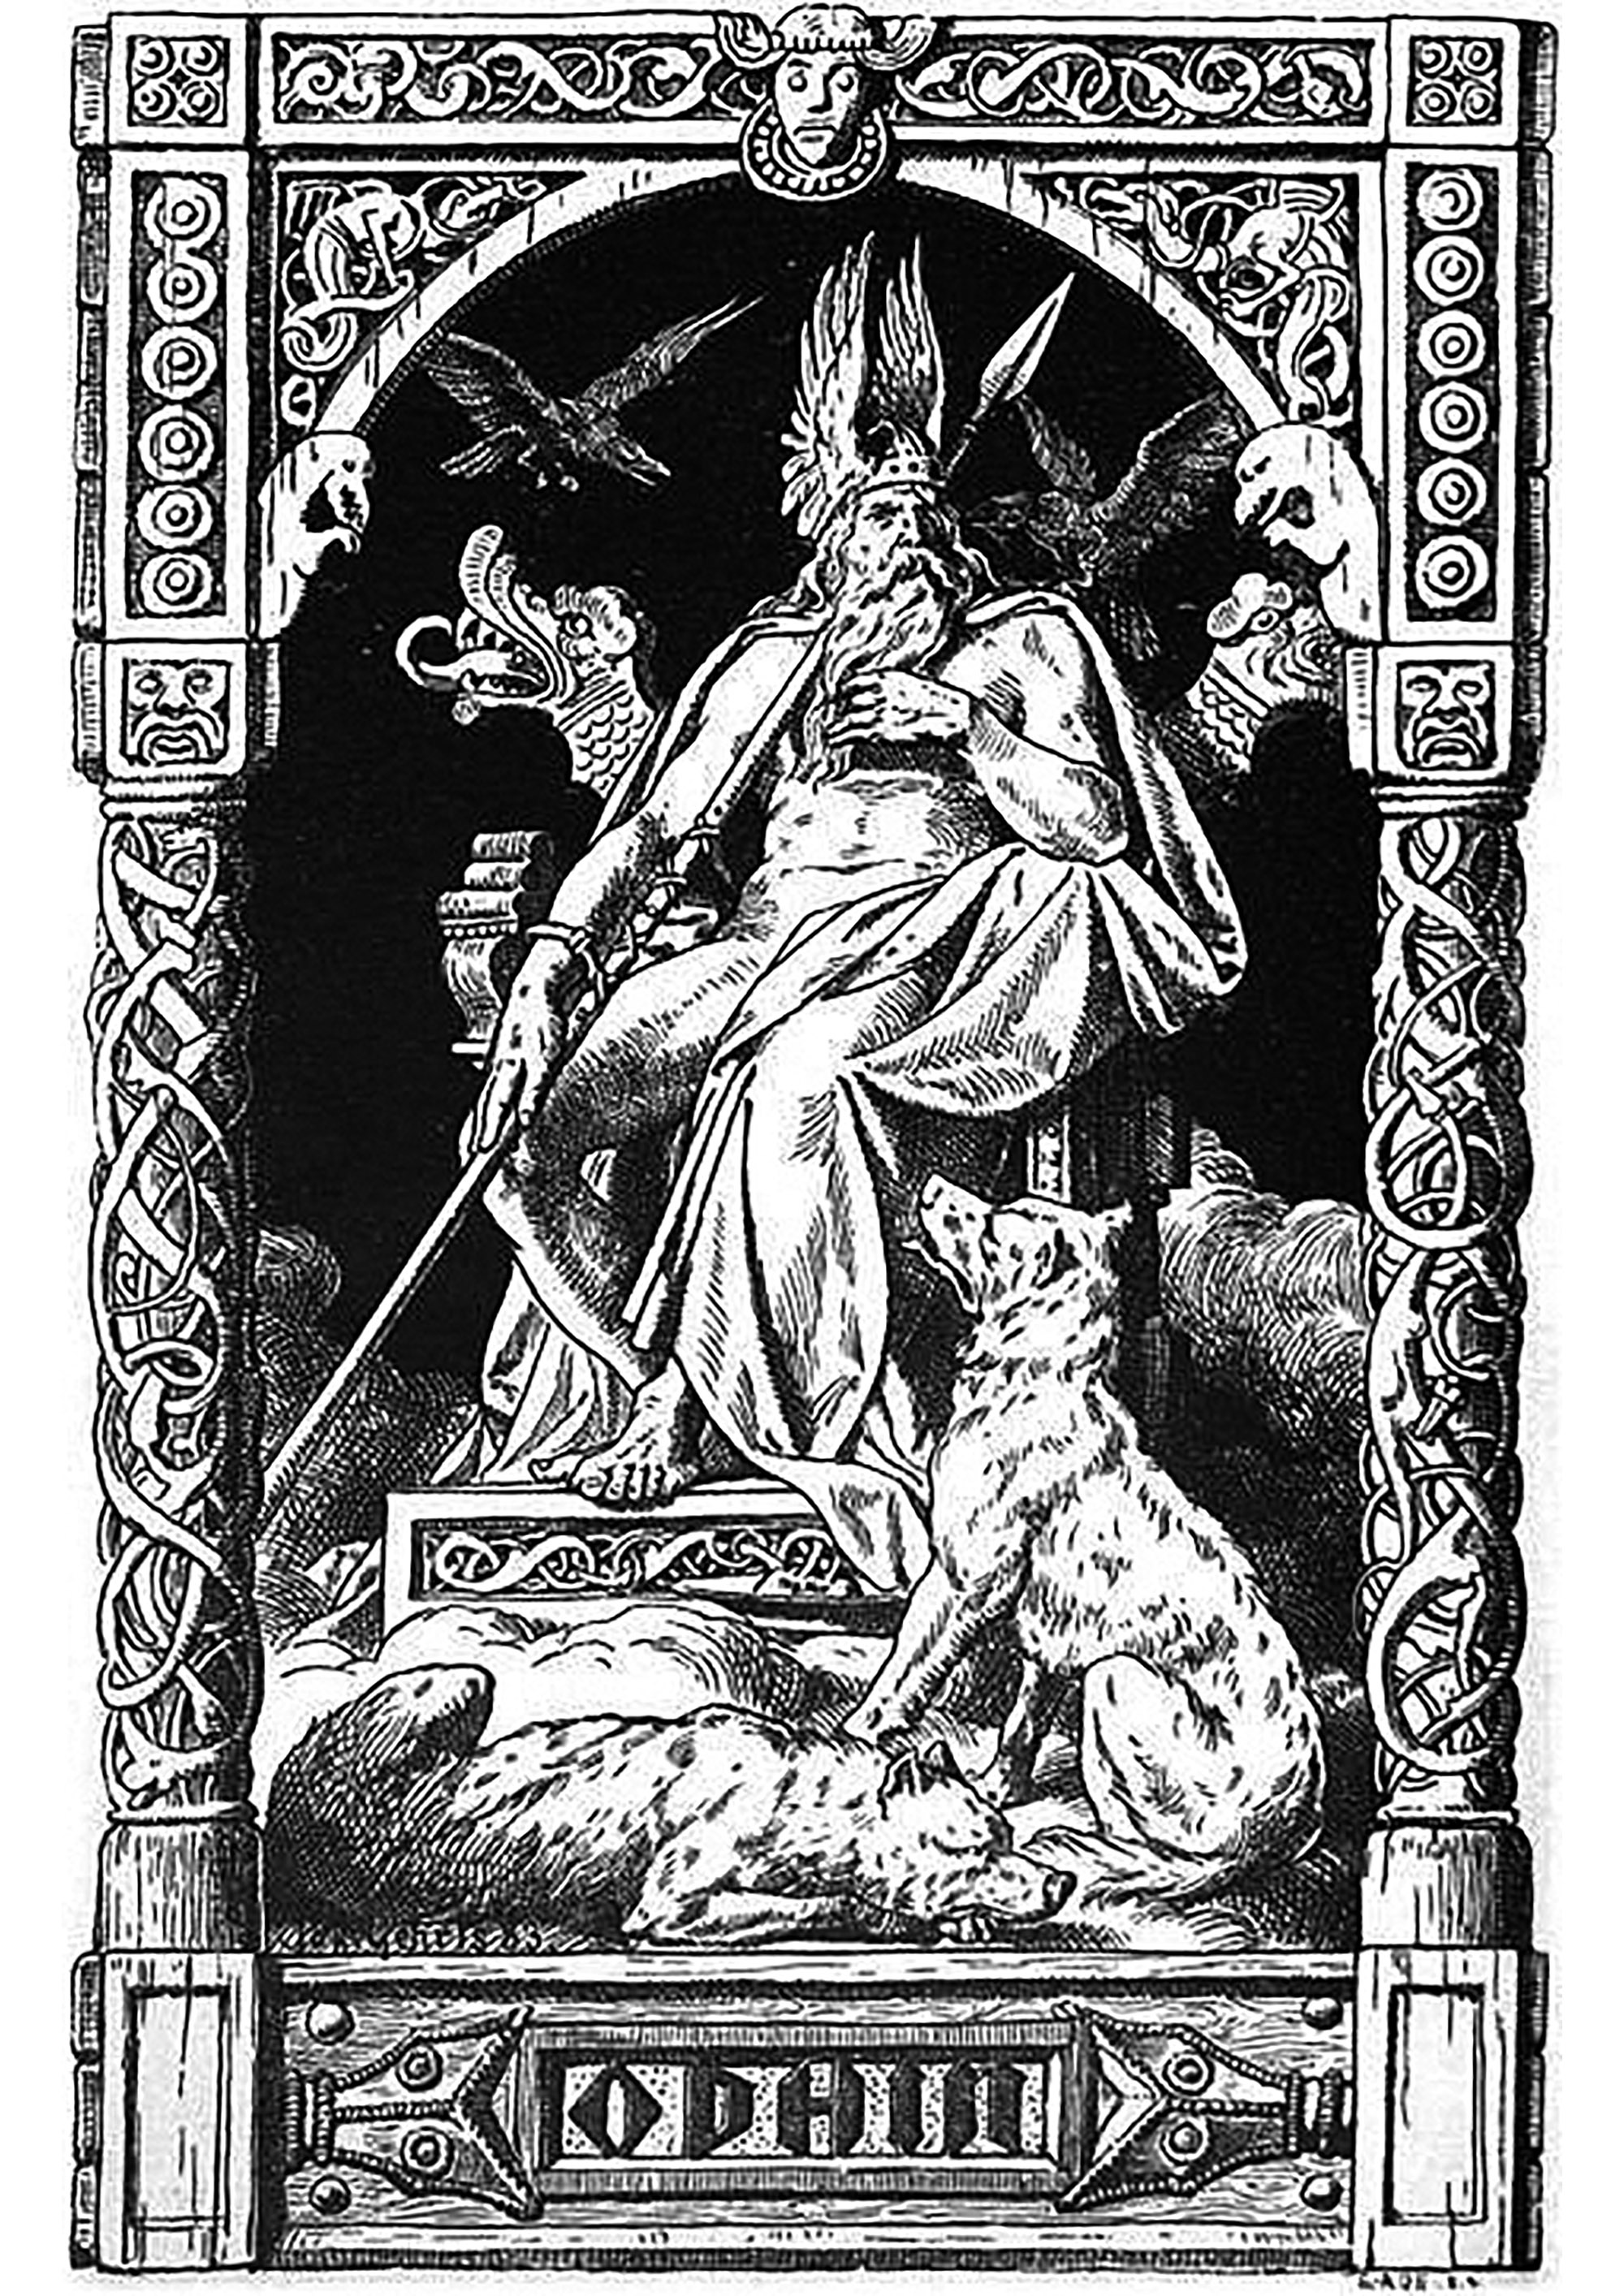 Odín - ilustración de Johannes Gehrts (1855, 1921). Esta ilustración muestra a Odín, el dios principal de la mitología nórdica, entronizado en su trono. Está rodeado por sus dos cuervos, Hugin y Munin, que son sus mensajeros y le informan de todo lo que ocurre en el mundo.